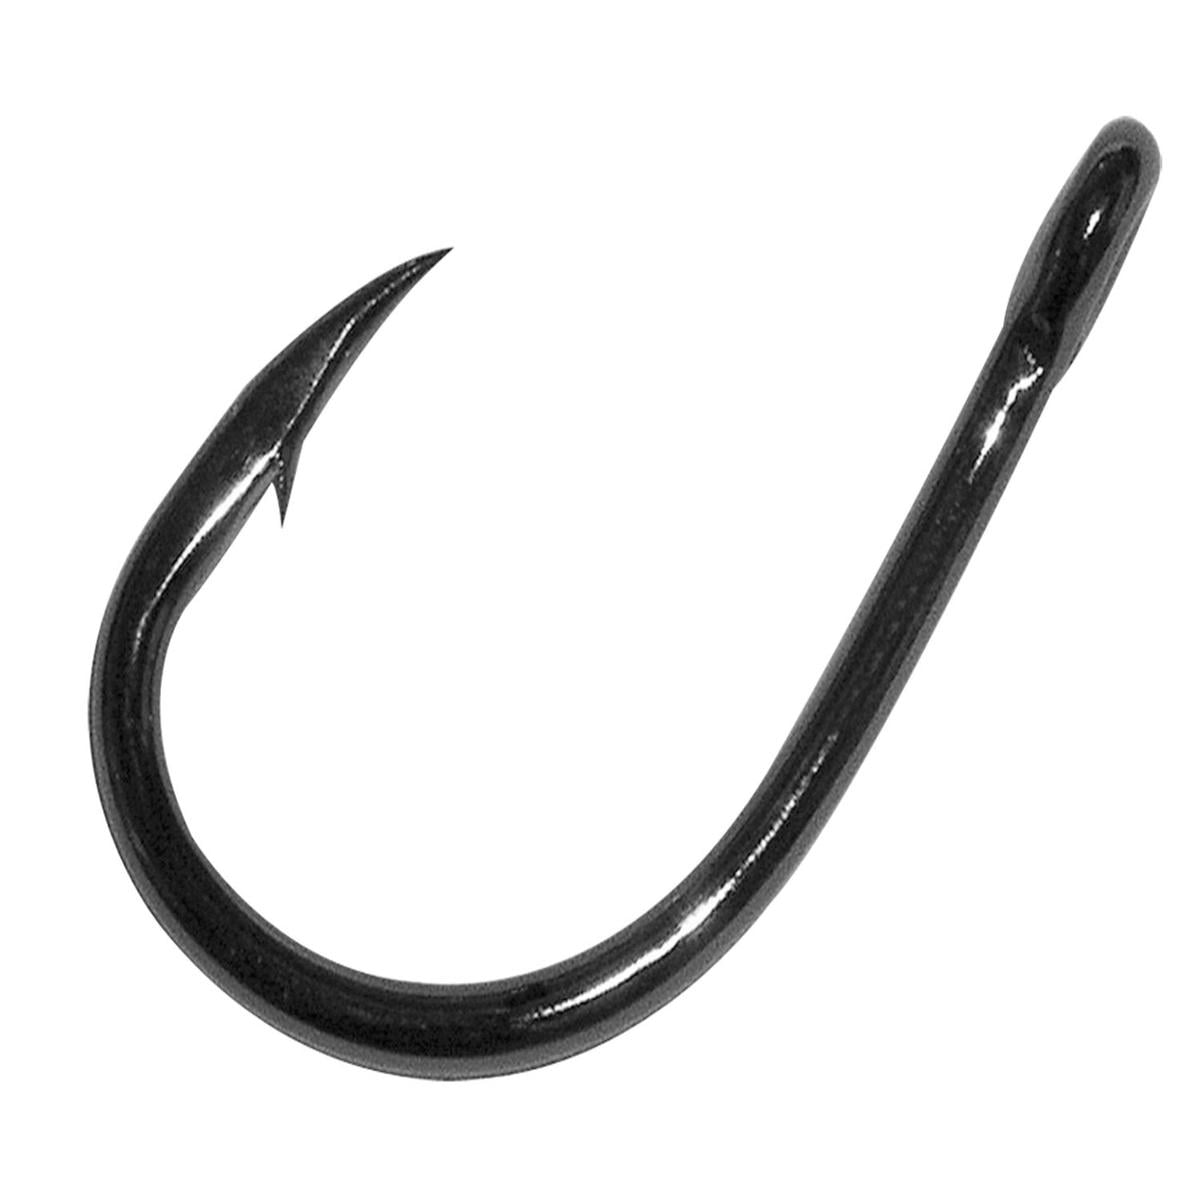 Gamakatsu 18411-25 Live Bait Hook Size 1/0 Needle Point Ringed Eye 